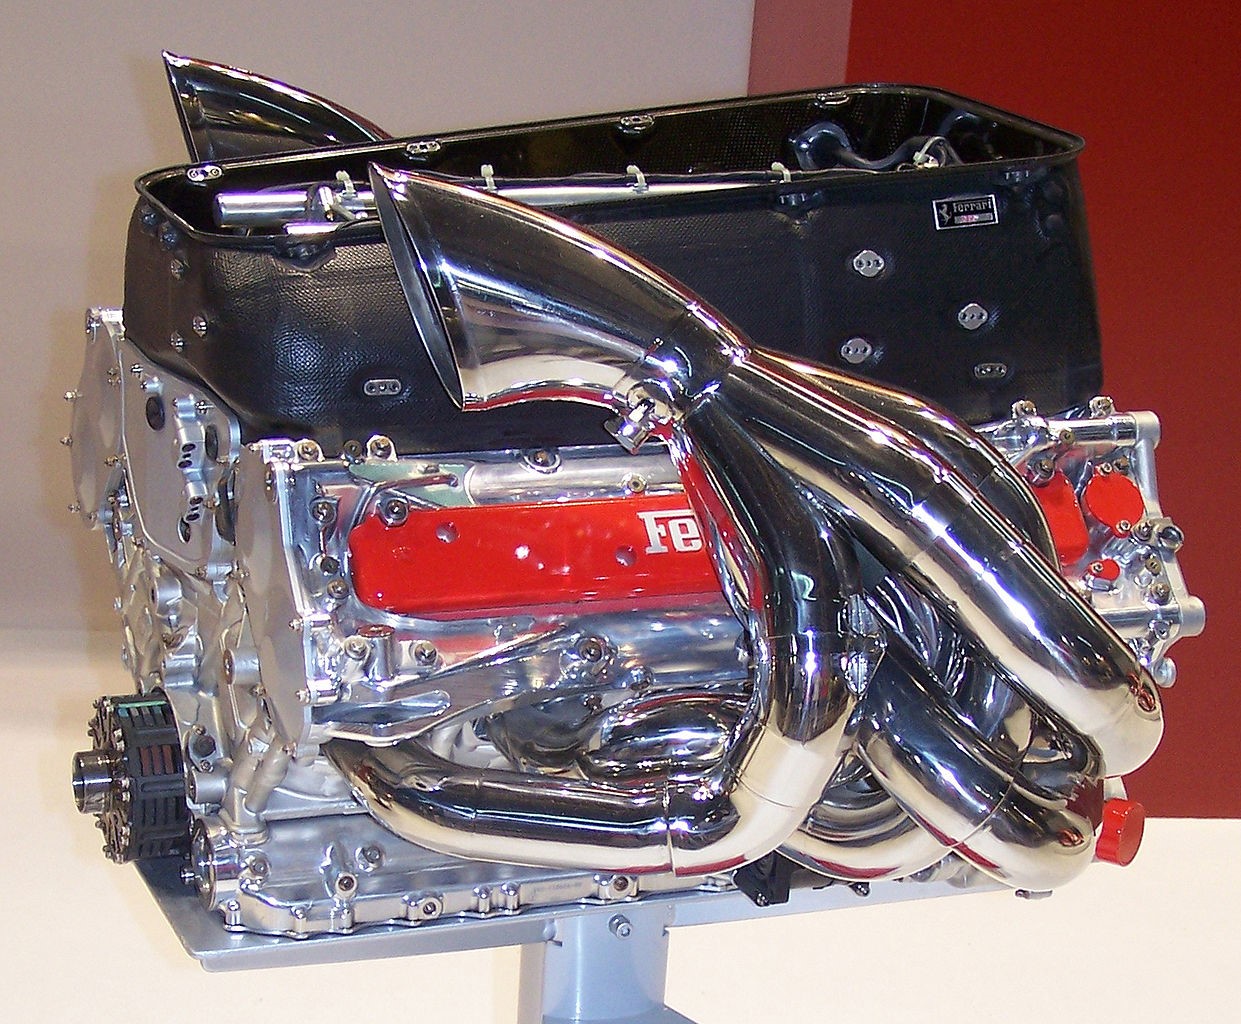 Ferrari 054 V10 engine.